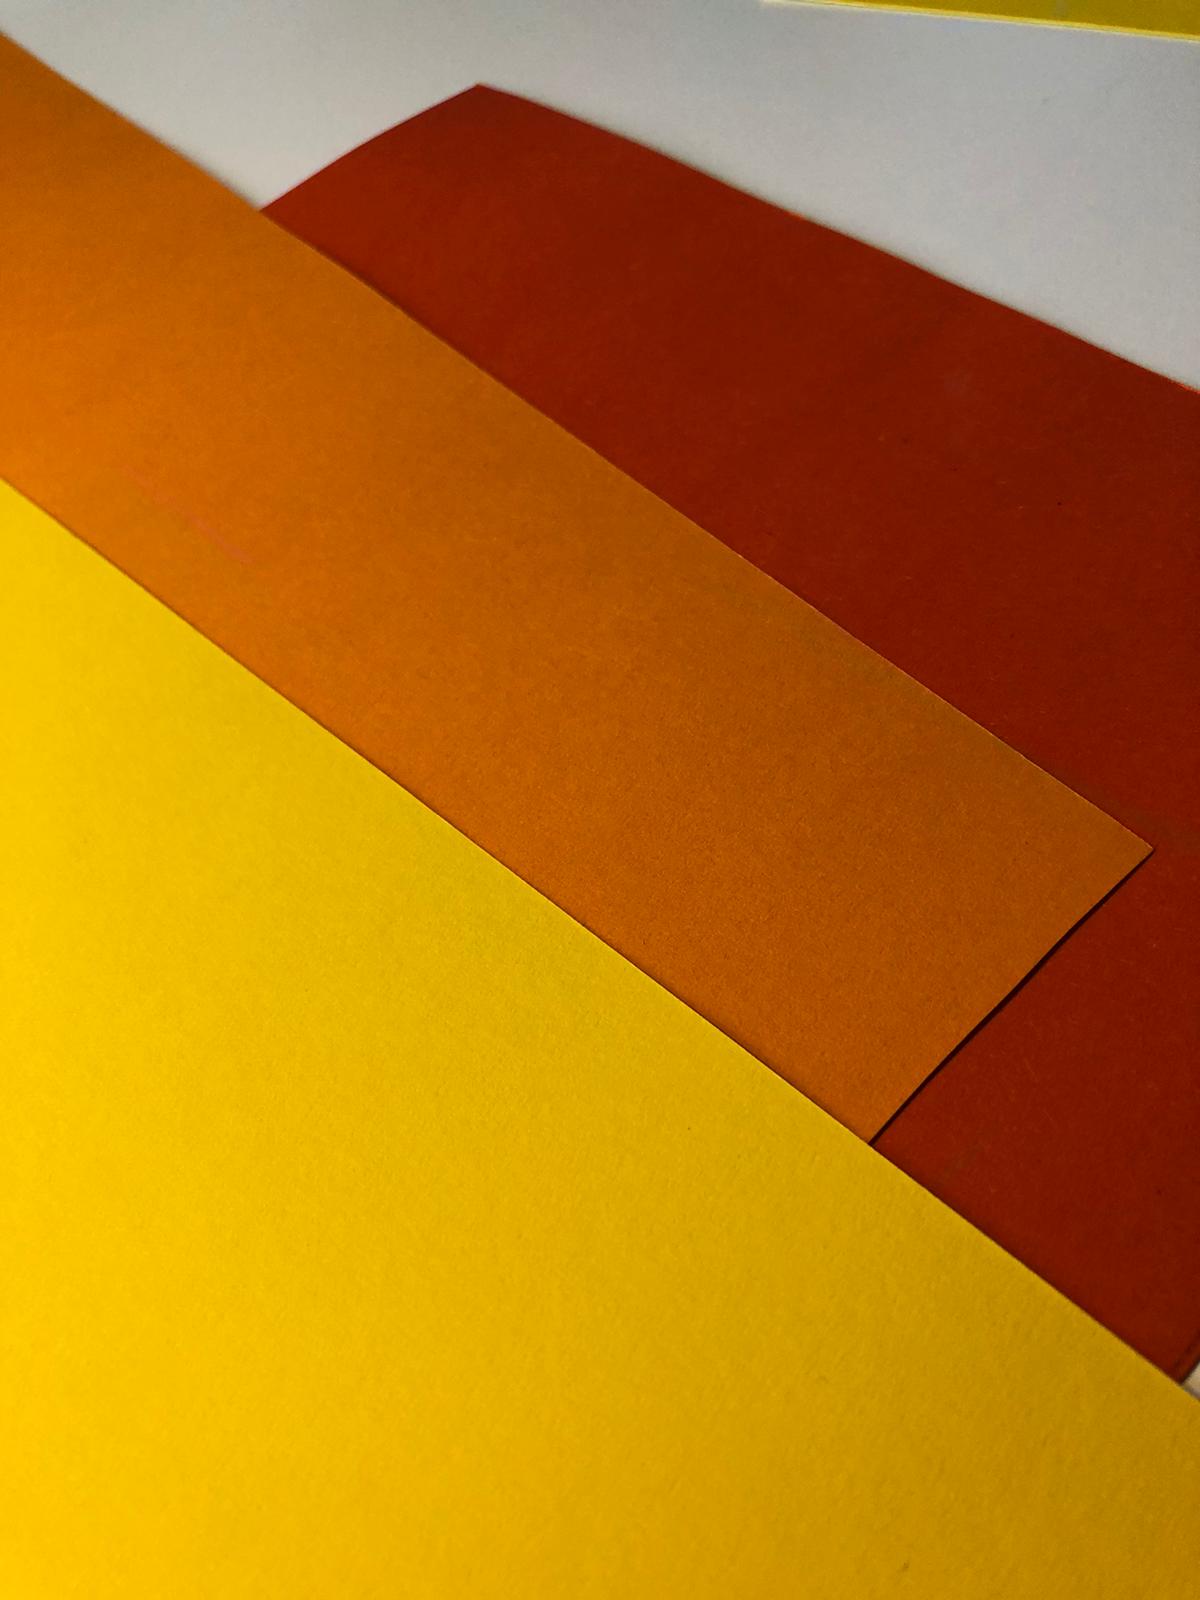 Bild zum Schritt 1 für die Kinder-Beschäftigung: 'Legt eure Bastelunterlage aus und wählt euch drei Farben Tonpapier...'